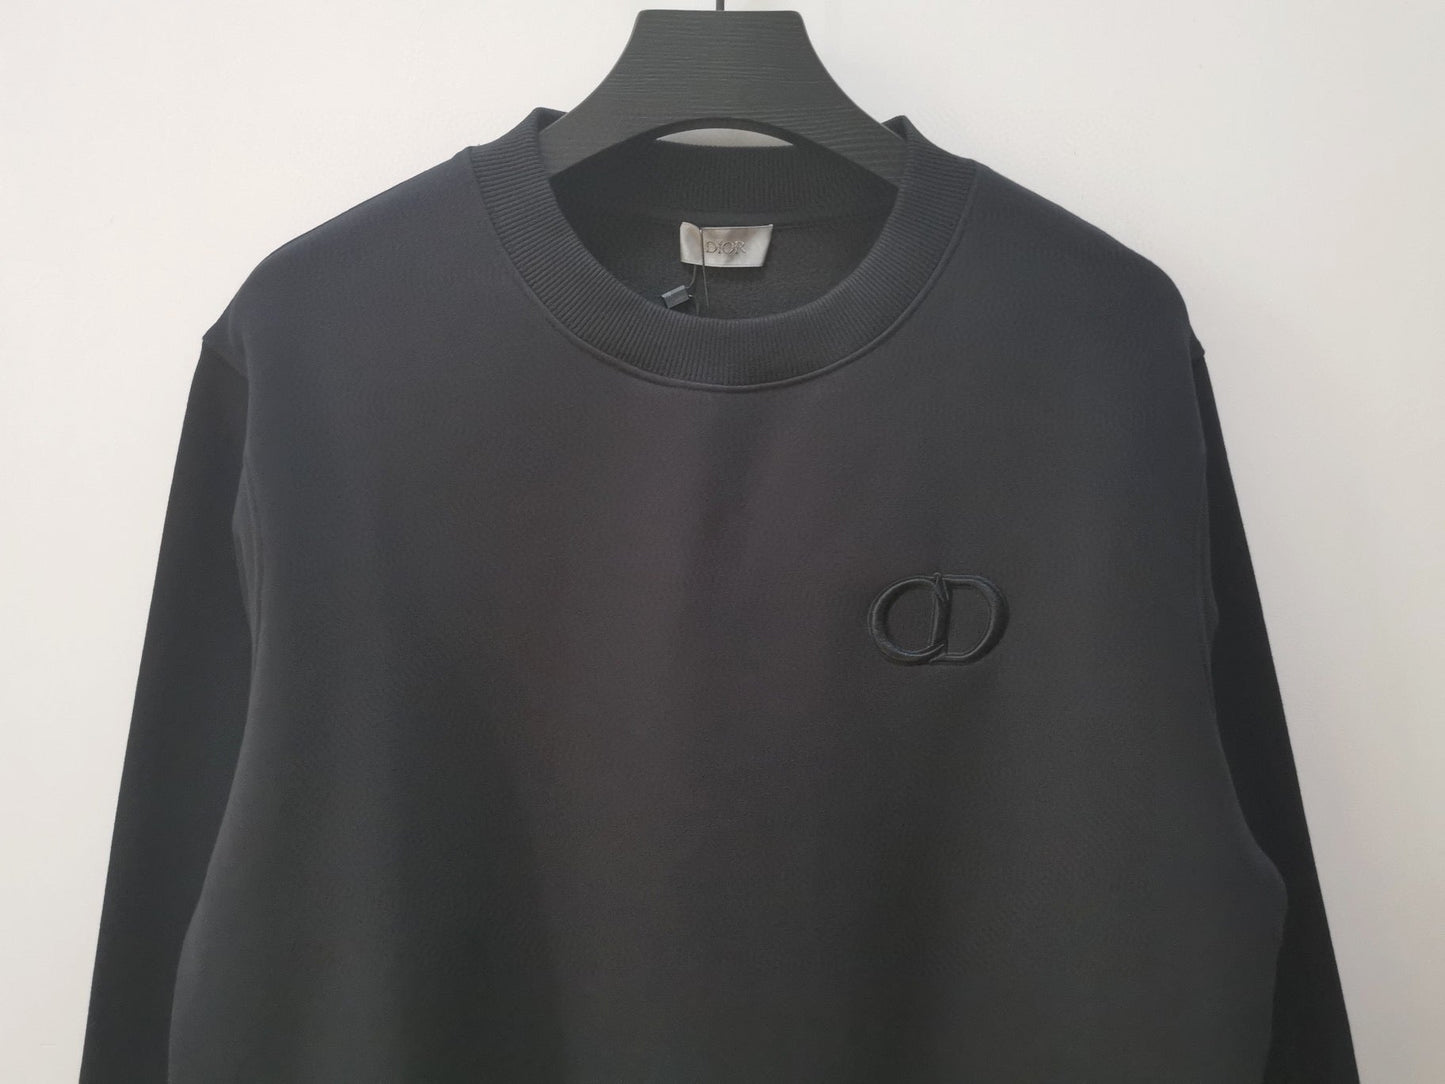 Multi-color Sweatshirt - Size L